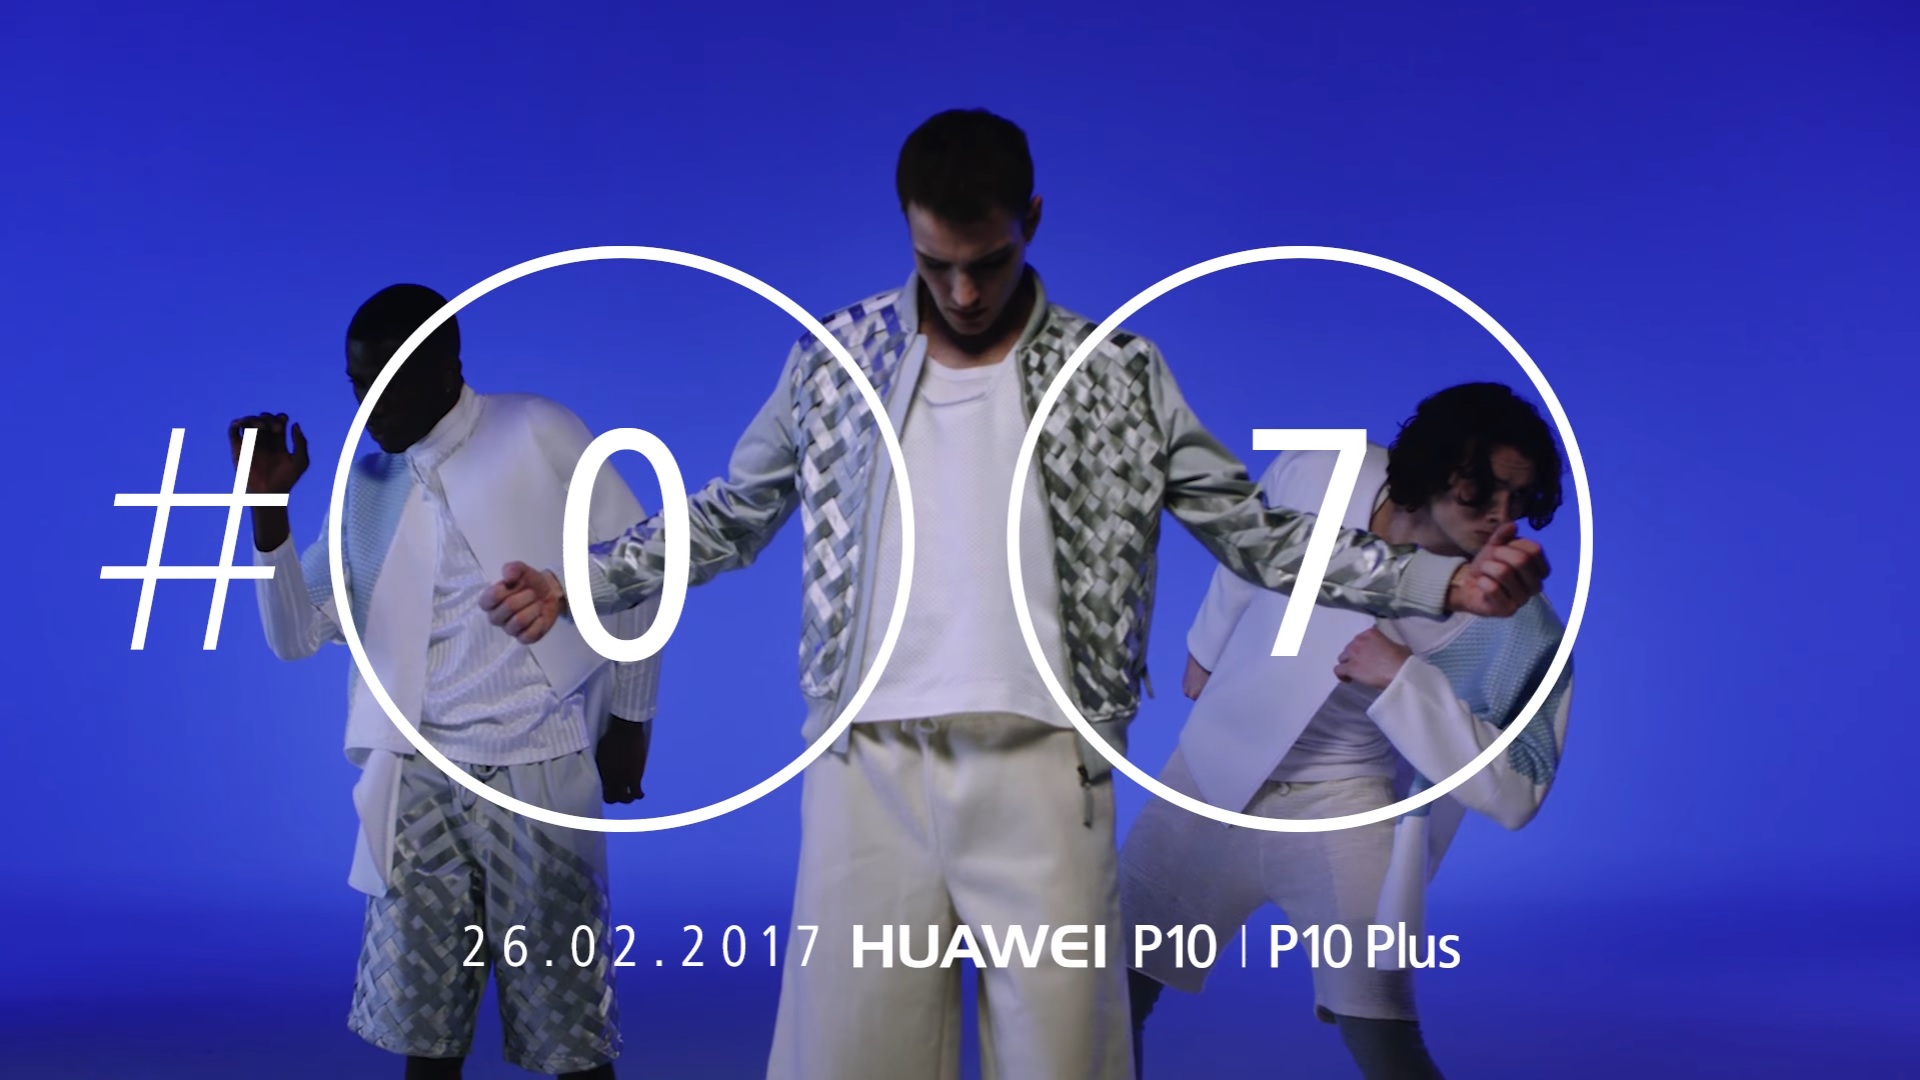 Huawei ปล่อยวิดีโอทีเซอร์ยั่ว ก่อนเปิดตัว Huawei P10 และ P10 Plus ในอีกหนึ่งอาทิตย์ !!